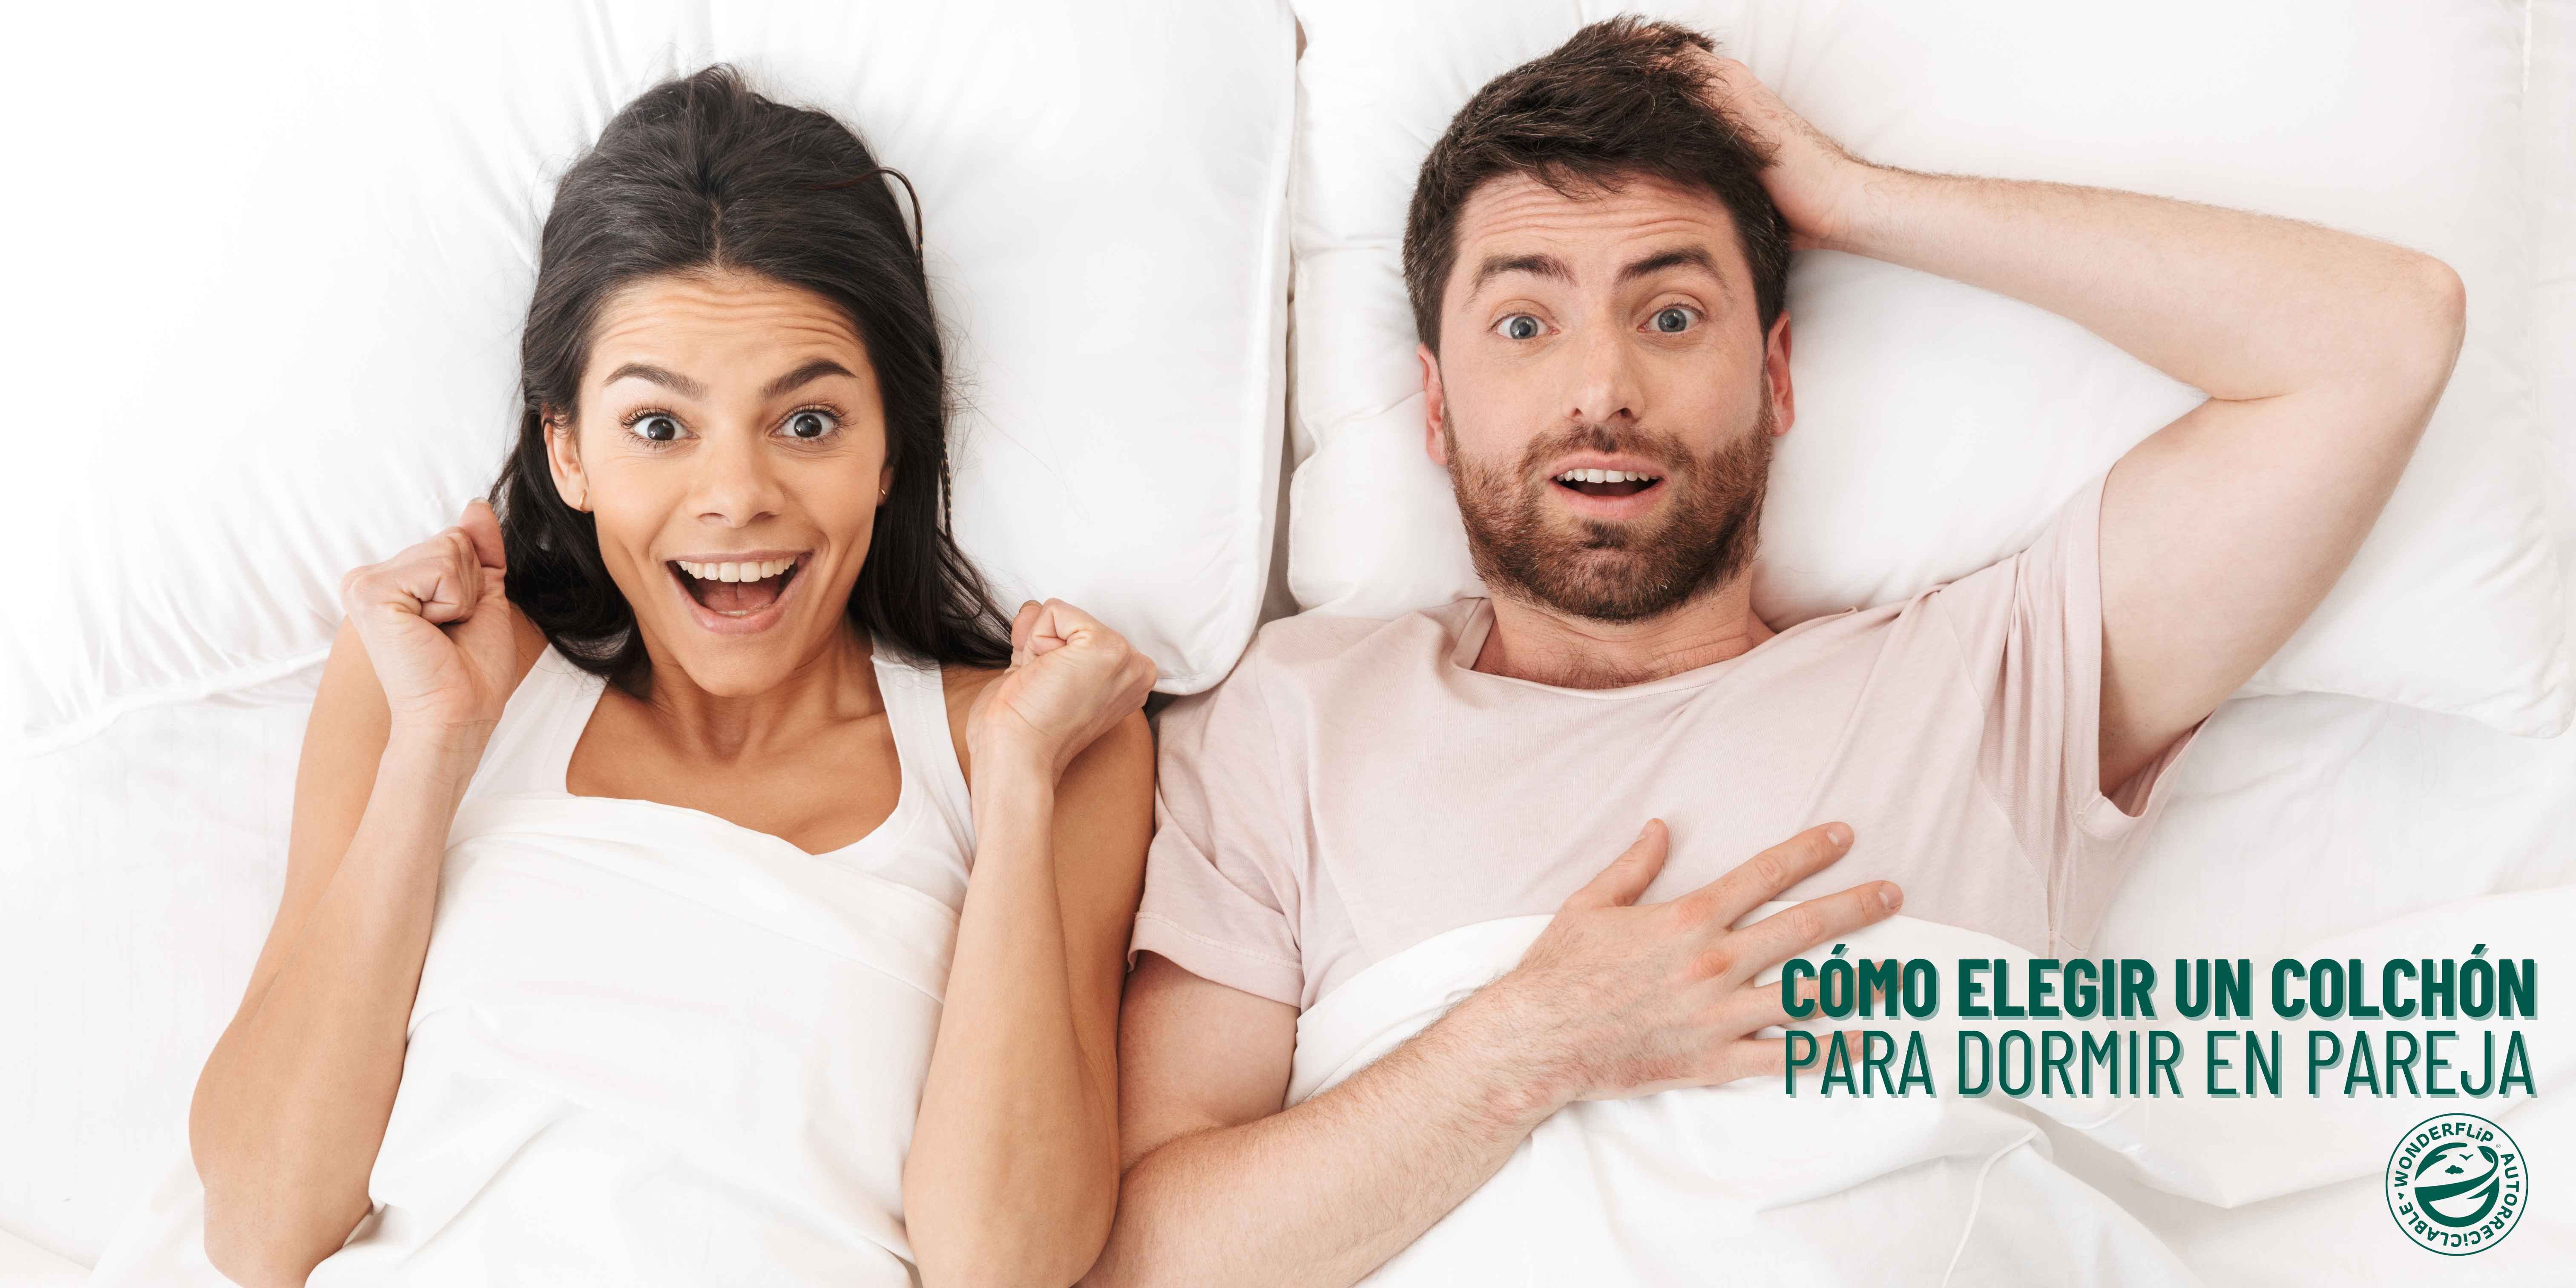 ¿Cómo elegir un colchón para dormir en pareja? | Wonderflip